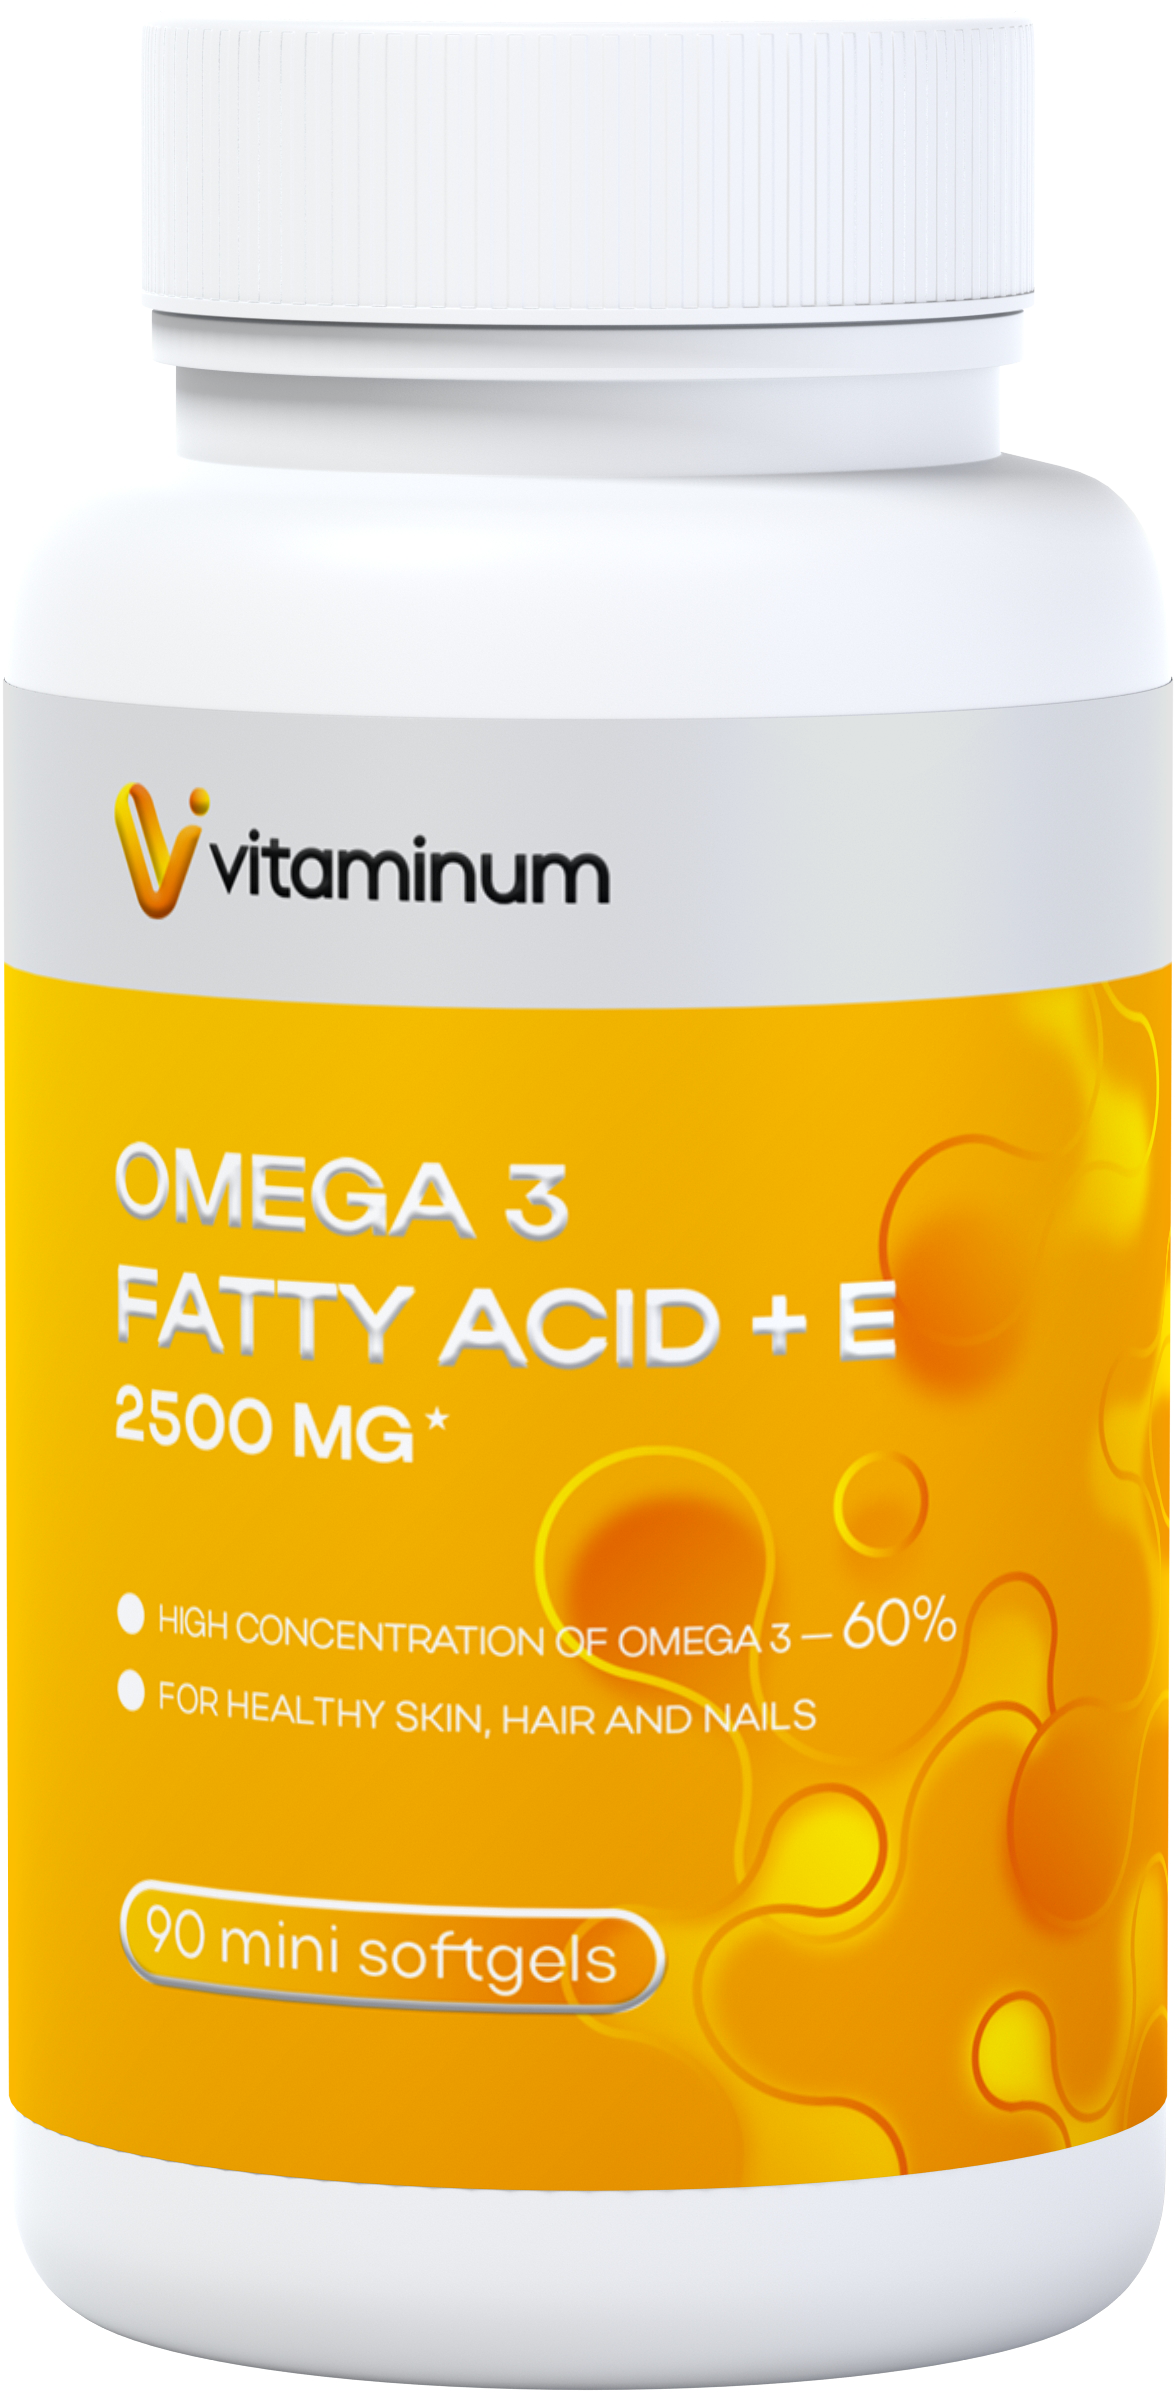  Vitaminum ОМЕГА 3 60% + витамин Е (2500 MG*) 90 капсул 700 мг   в Дзержинске